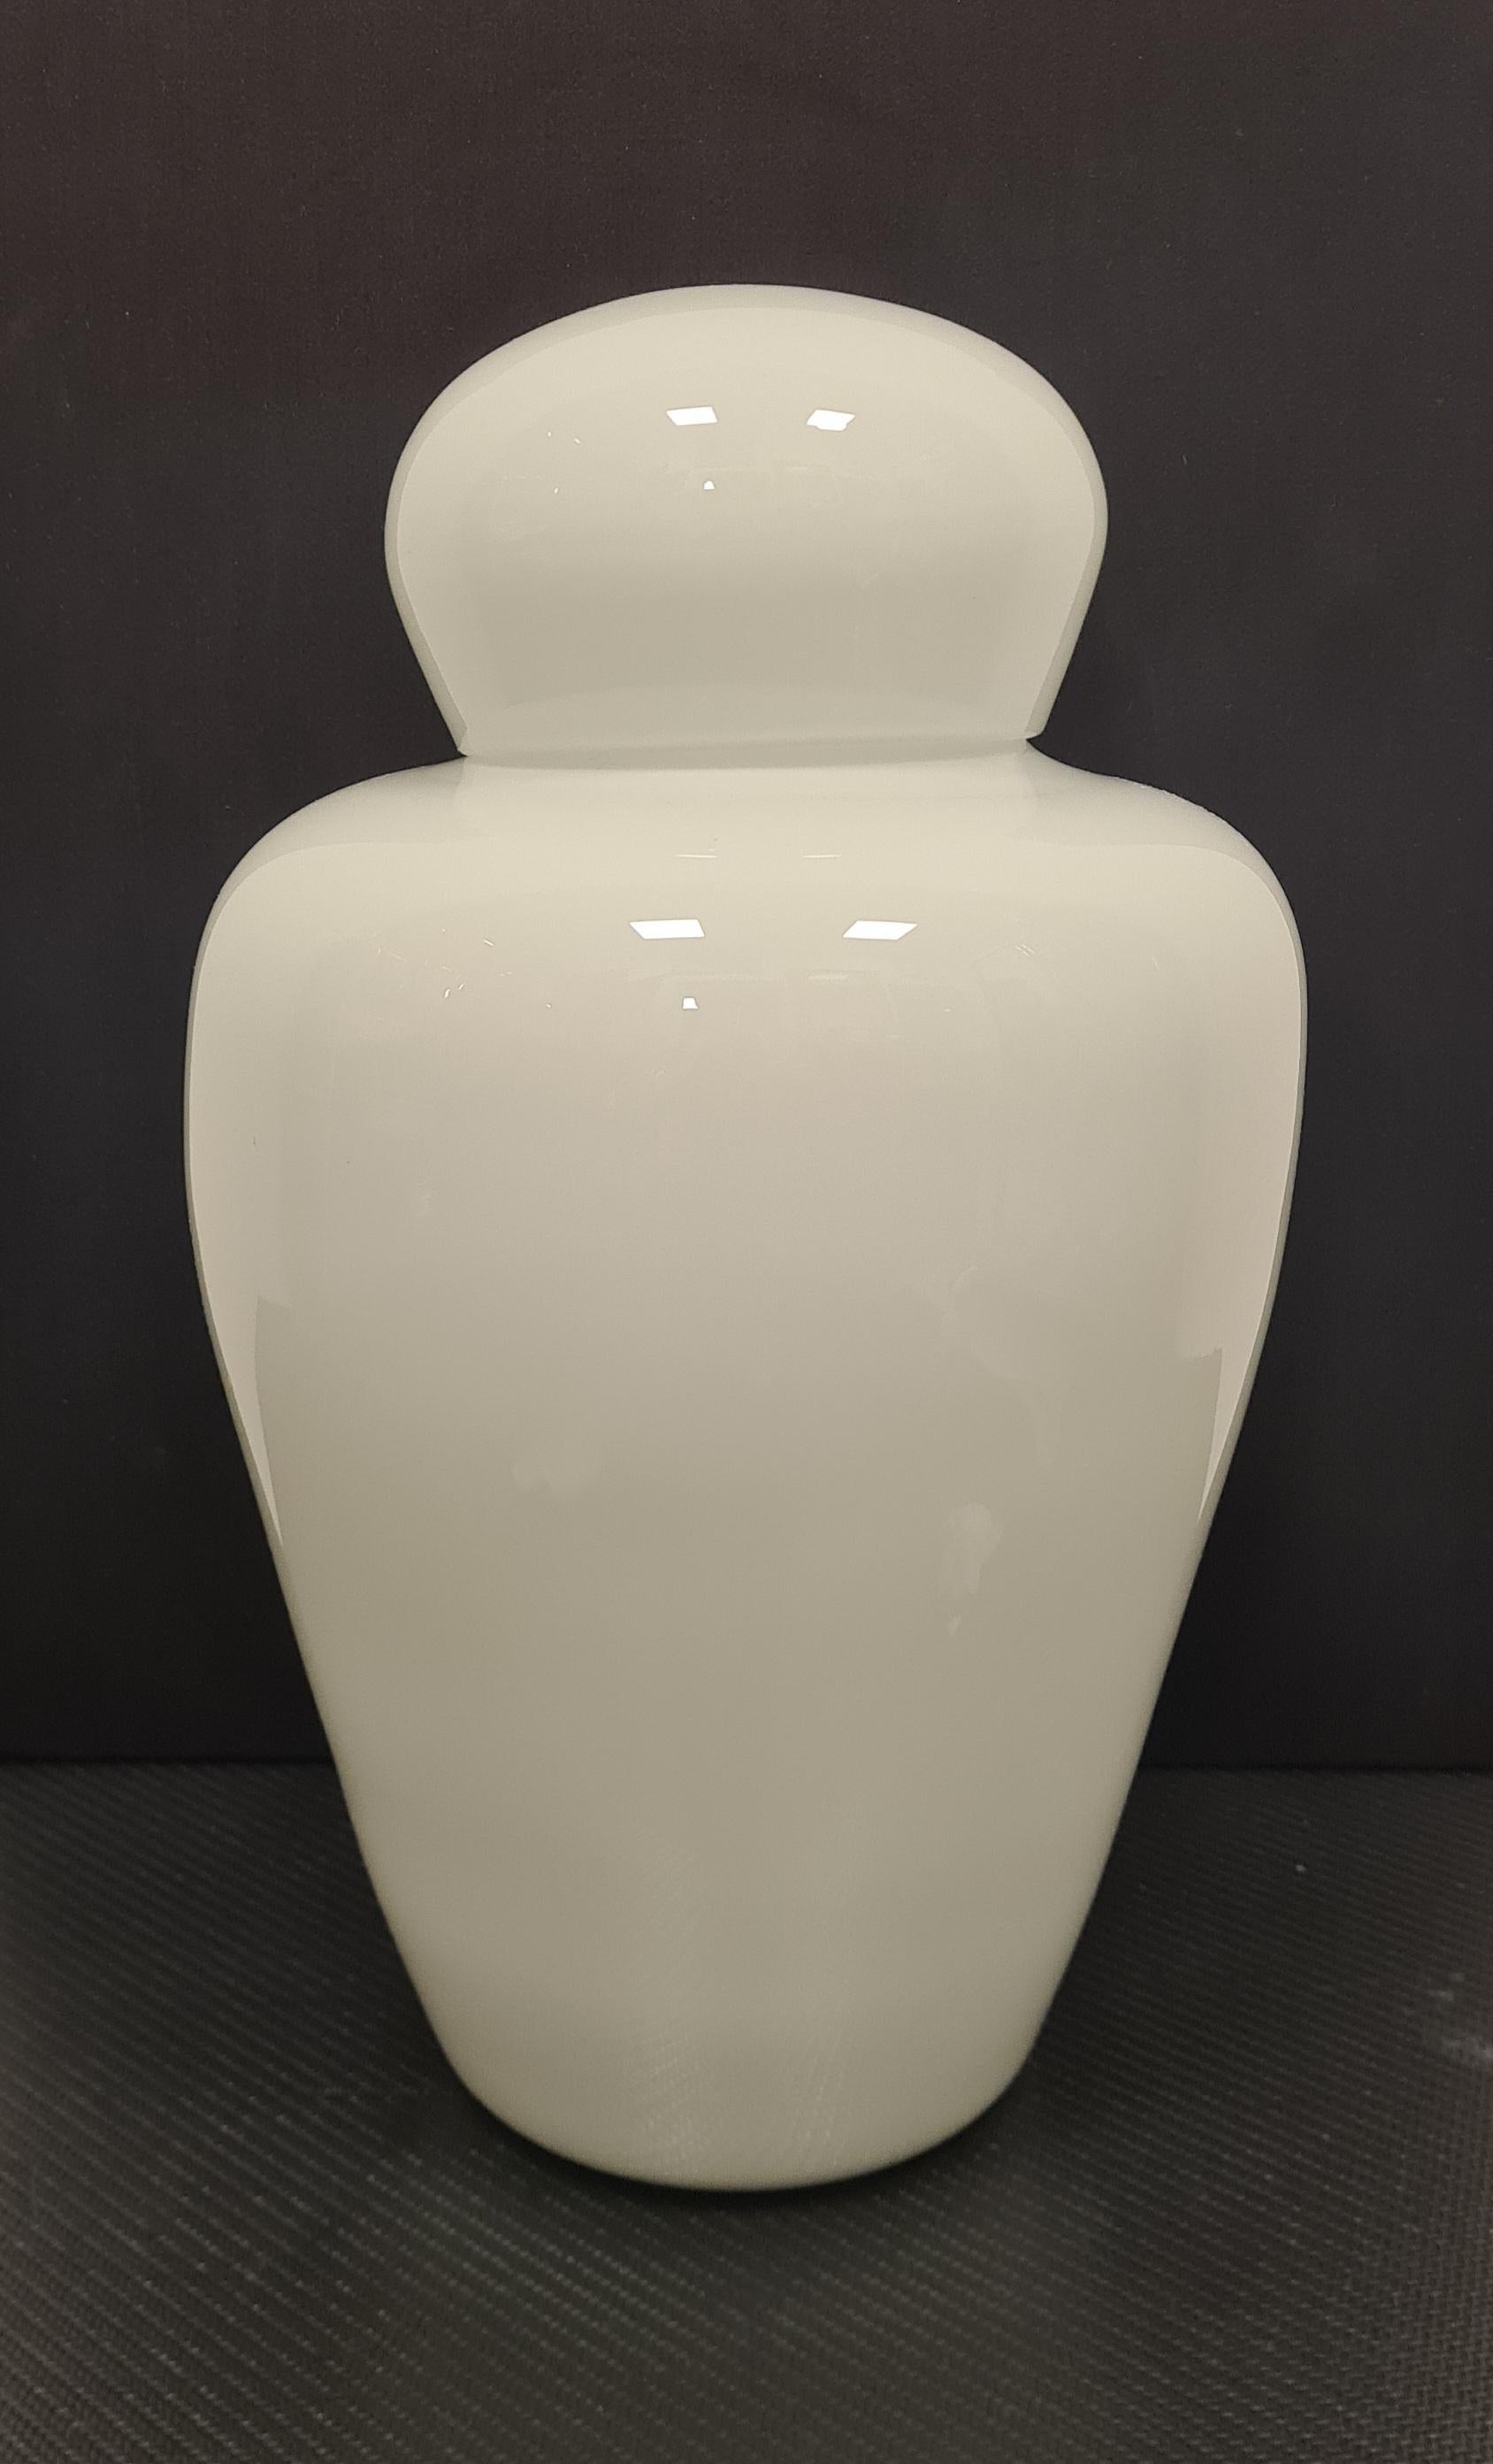 Vase aus der Serie Chinese, entworfen von Tobia Scarpa für Venini.

Elegante Vase mit Deckel aus weißem, geschichtetem Glas.

Die Cinesi-Serie wurde von Carlo Scarpa in den 1940er Jahren entworfen, sein Sohn Tobia schuf ab den 1960er Jahren